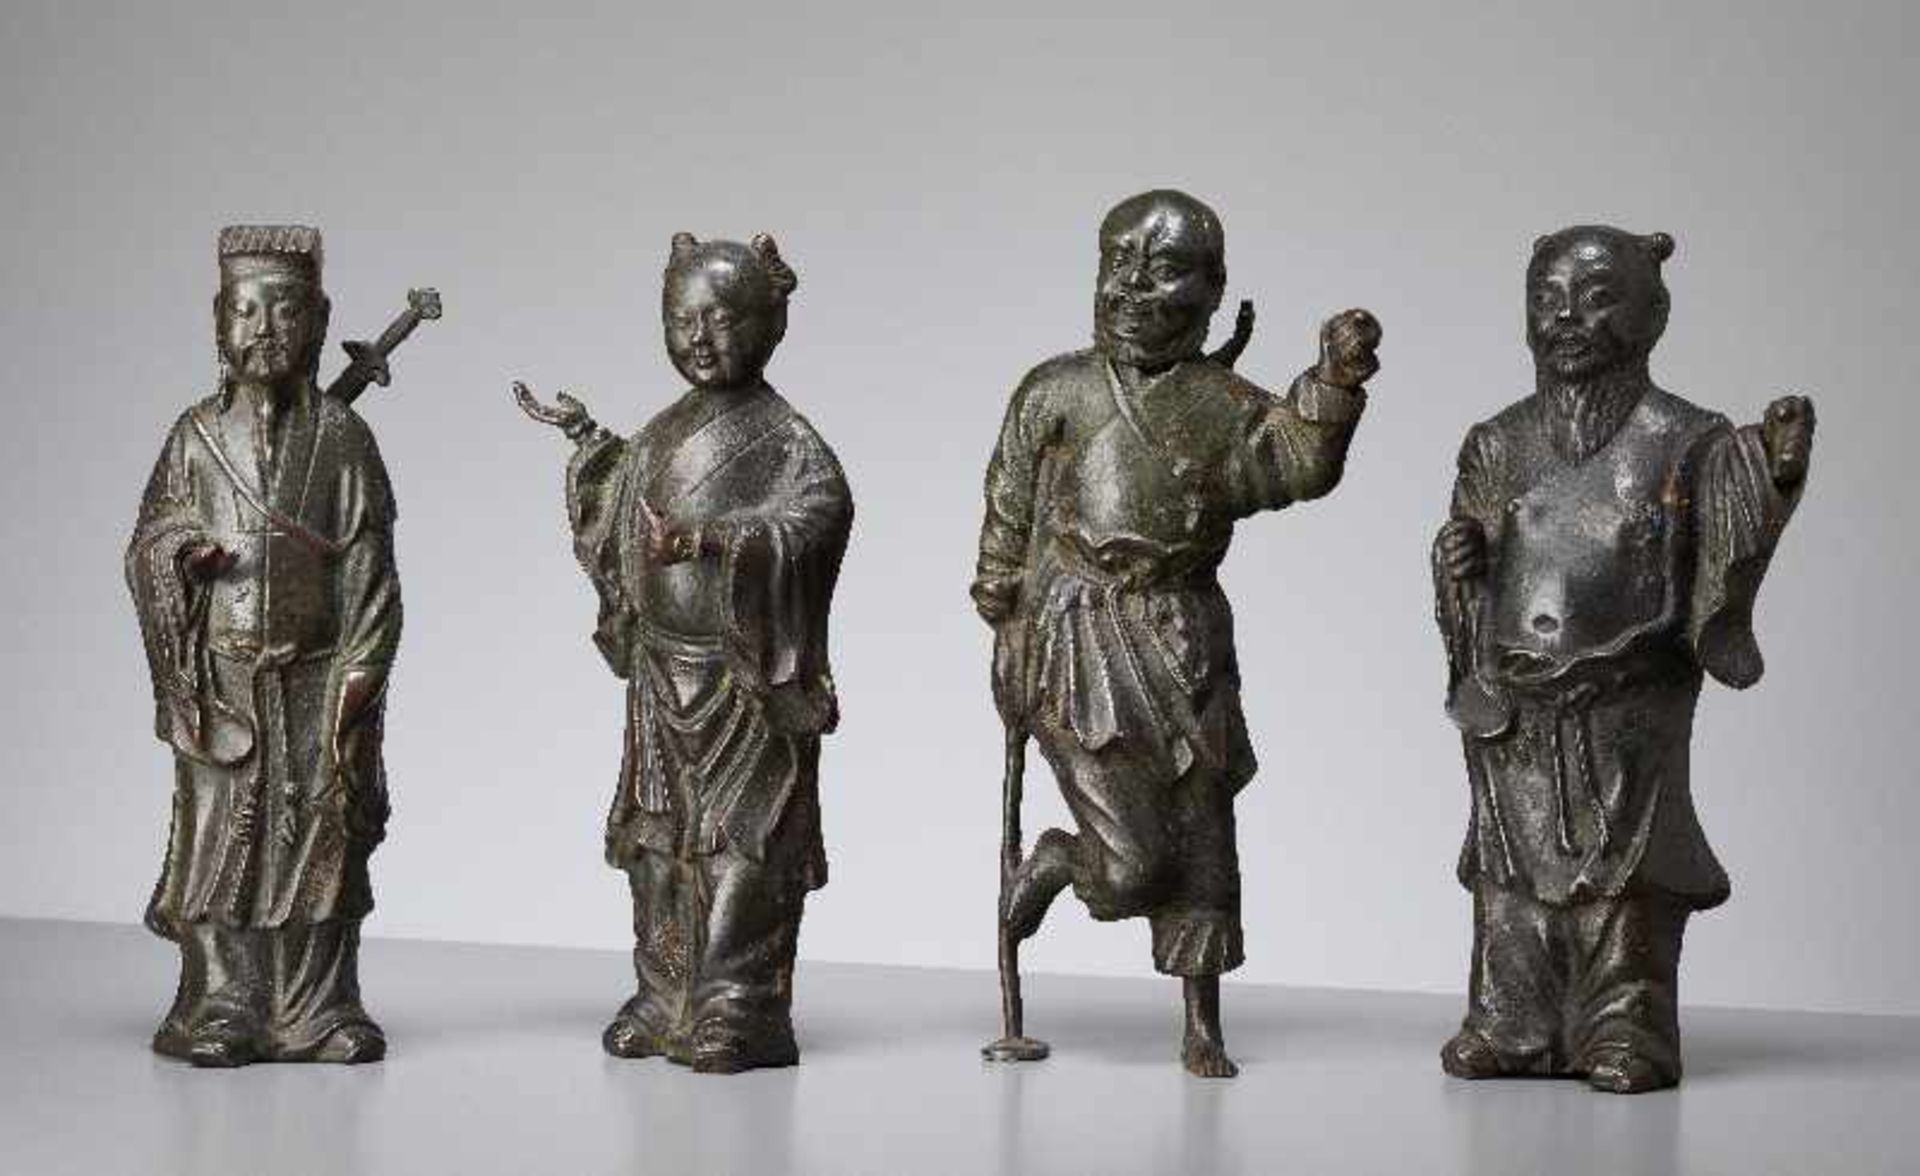 GRUPPE VON VIER UNSTERBLICHENBronze. China, späte Ming-Dynastie (bis 1644)Alle Figuren sind aus